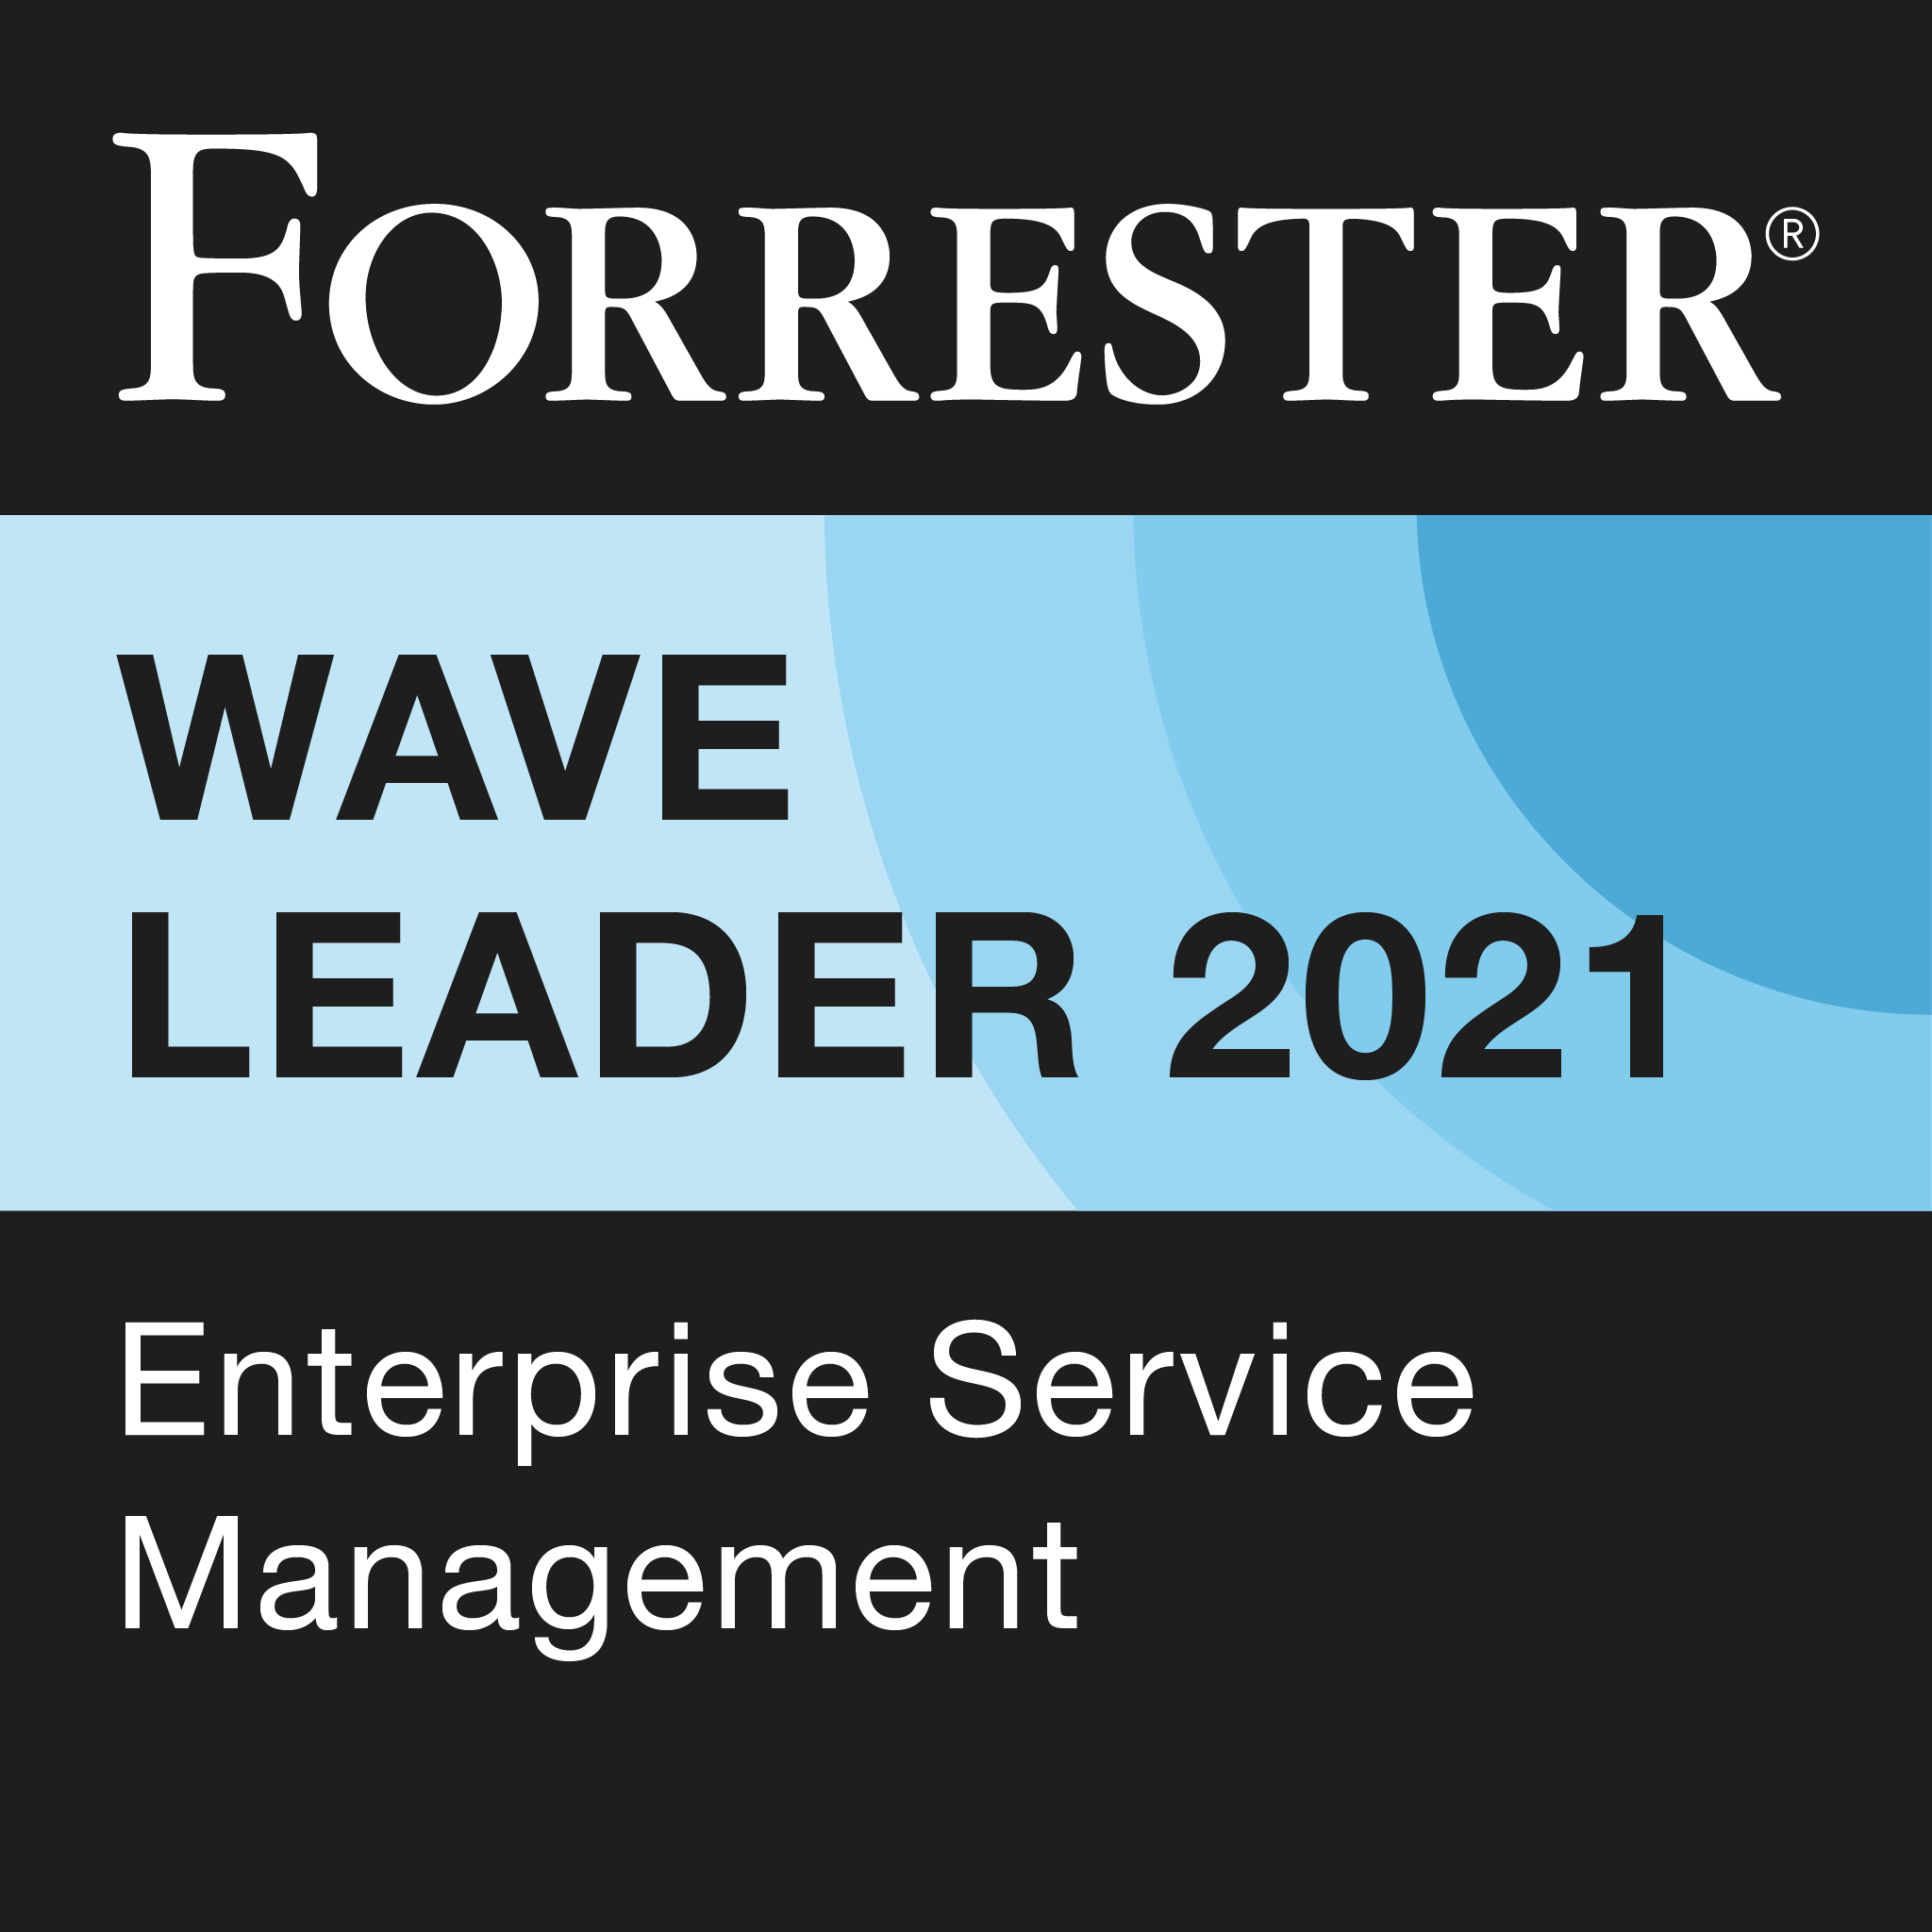 Leader du secteur dans le rapport Forrester Wave sur la gestion des services d'entreprise